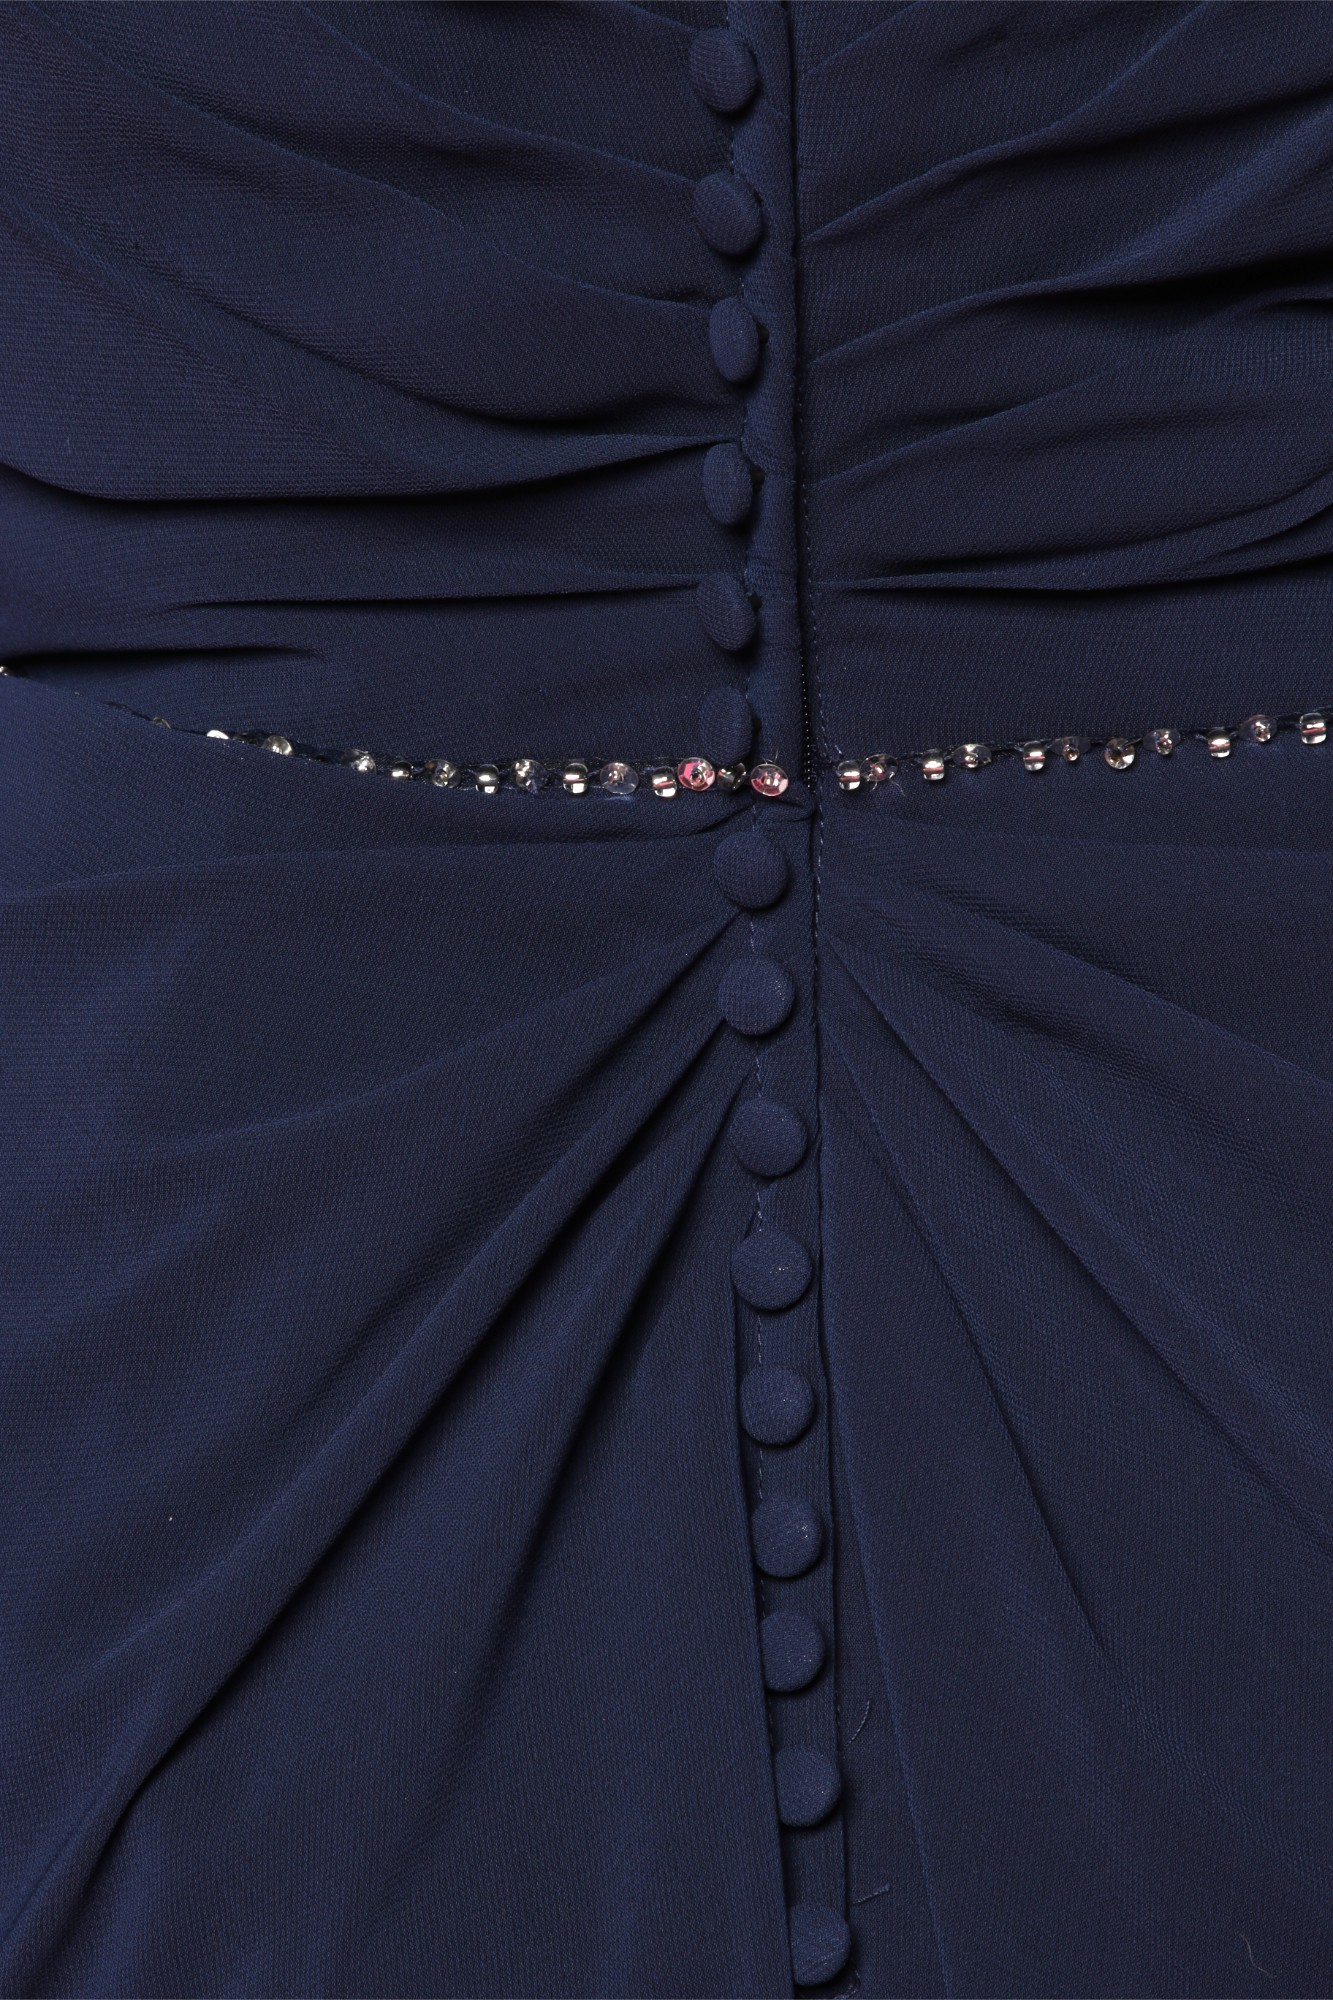 Robe de Coeur - Robe de soirée - robe de cérémonie- robe de demoiselle d’honneur - Albi - Tarn - robe occasion - petit budget -